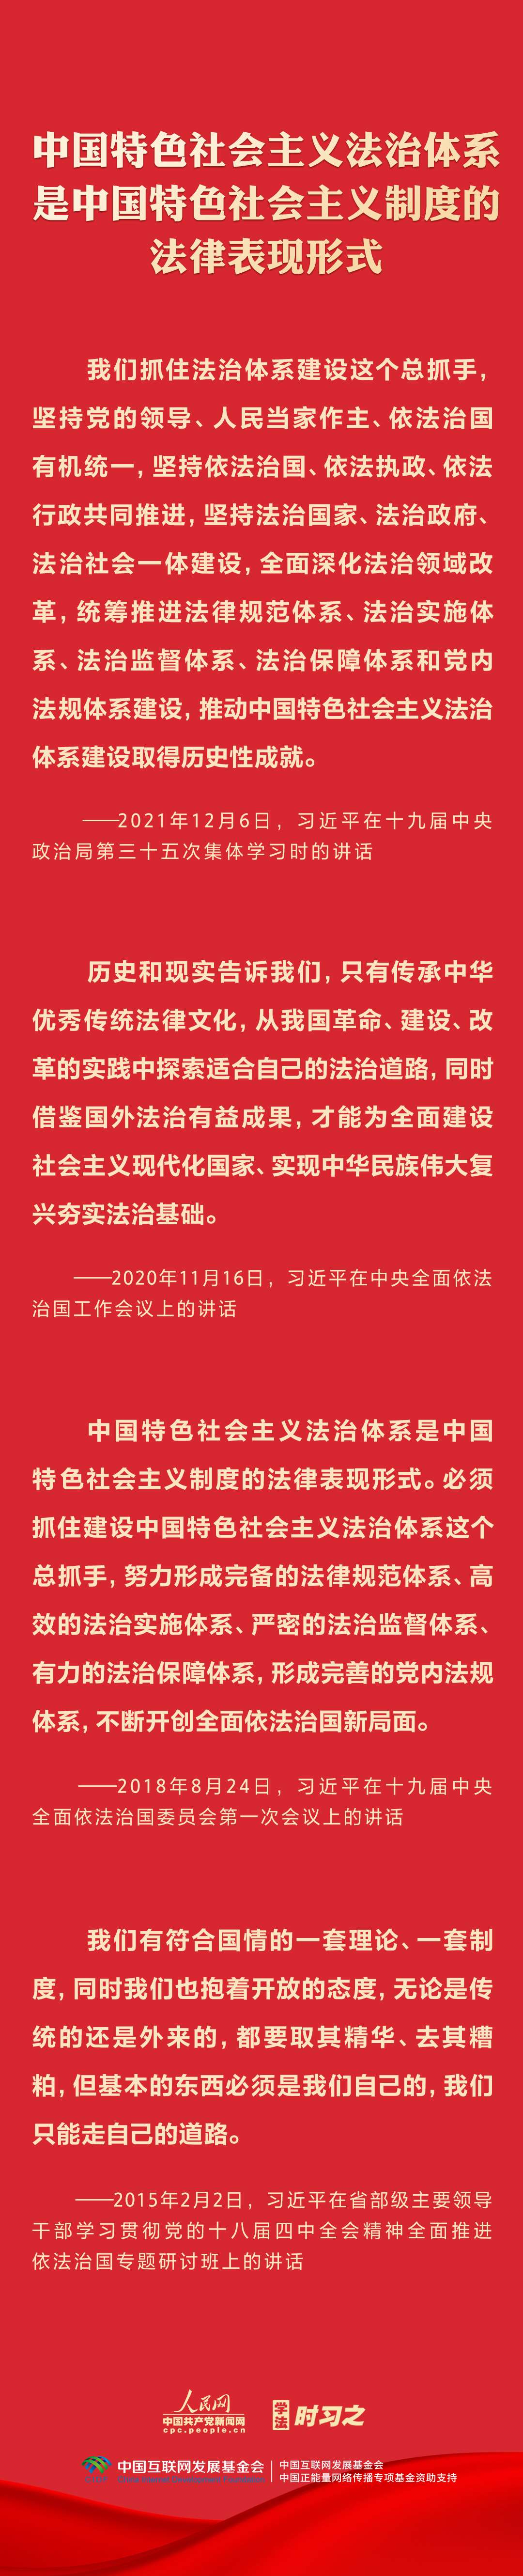 坚持中国特色社会主义法治道路2.jpg